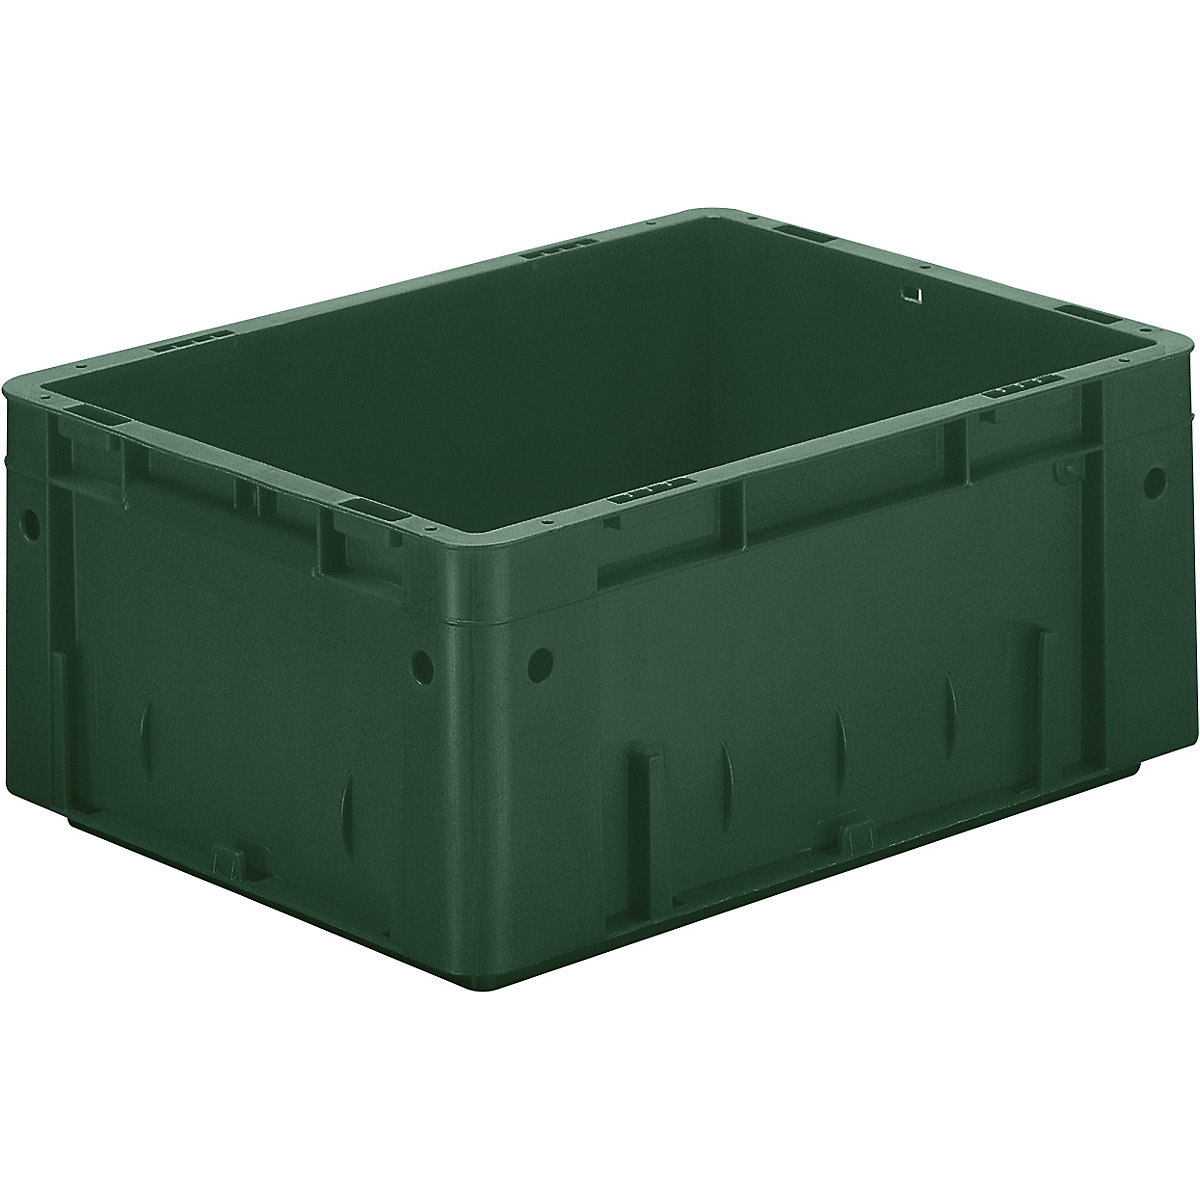 Schwerlast-Euro-Behälter, Polypropylen, Volumen 14,5 l, LxBxH 400 x 300 x 175 mm, Wände geschlossen, Boden geschlossen, grün, VE 4 Stk-5